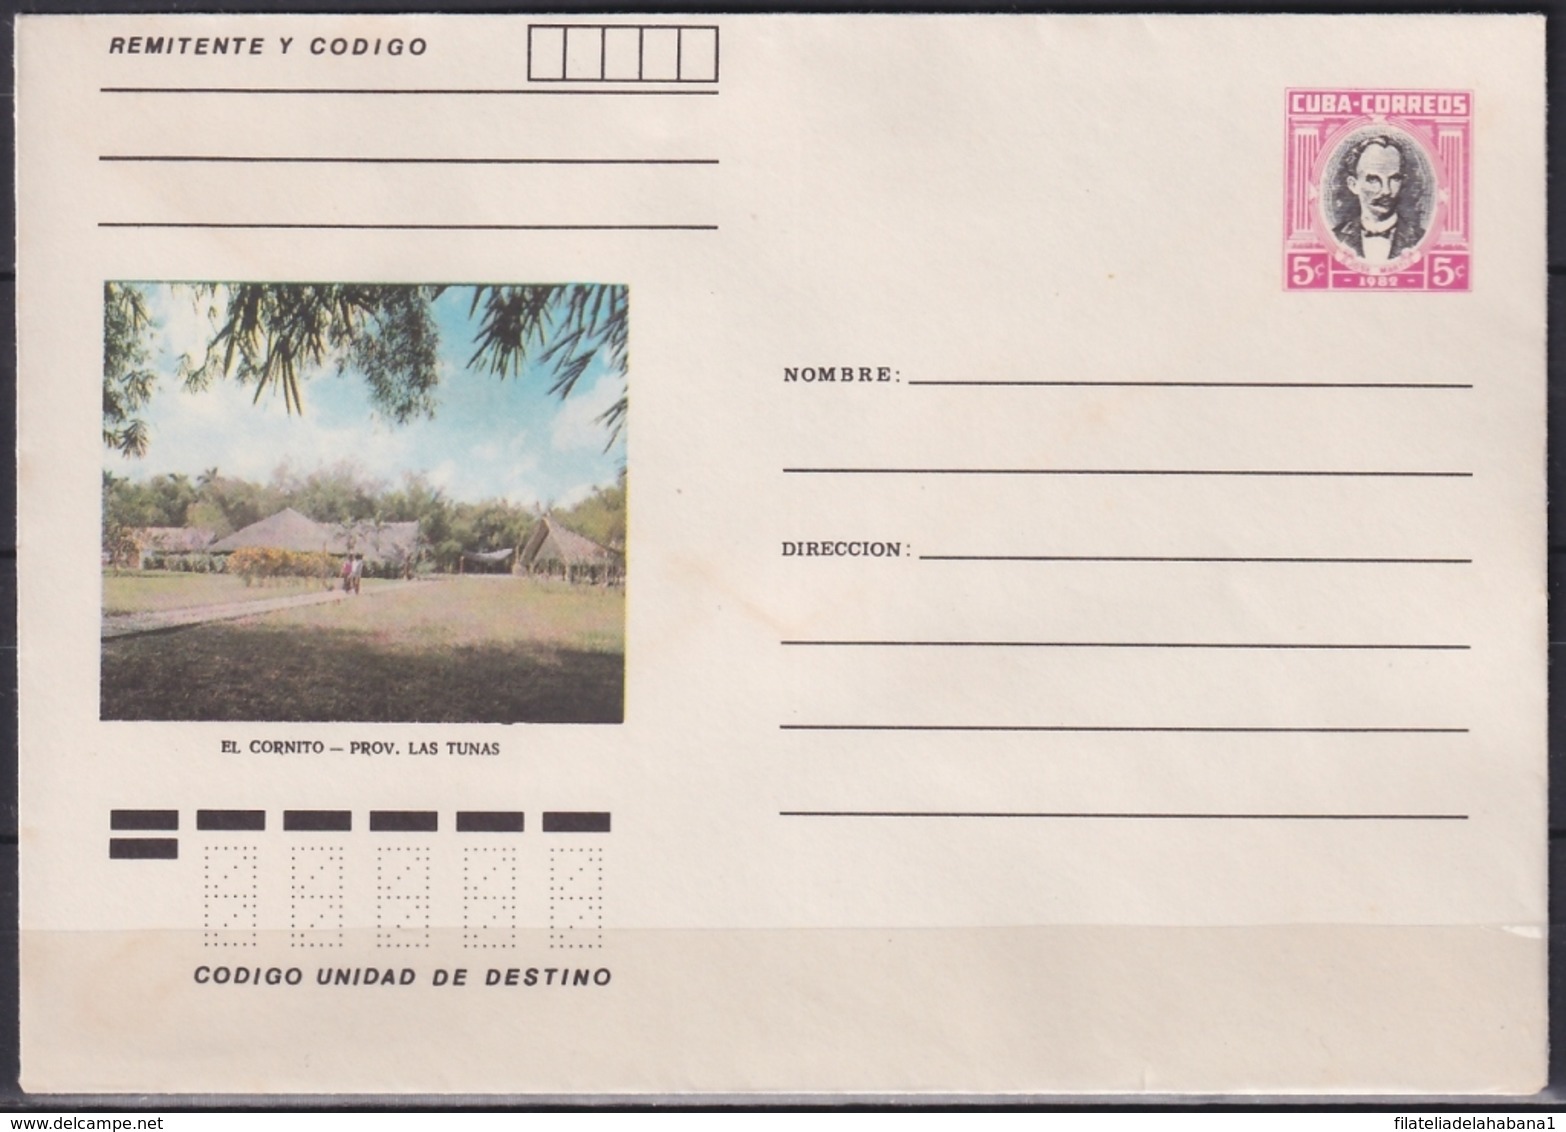 1982-EP-202 CUBA 1982 5c POSTAL STATIONERY COVER. LAS TUNAS, EL CORNITO. - Briefe U. Dokumente